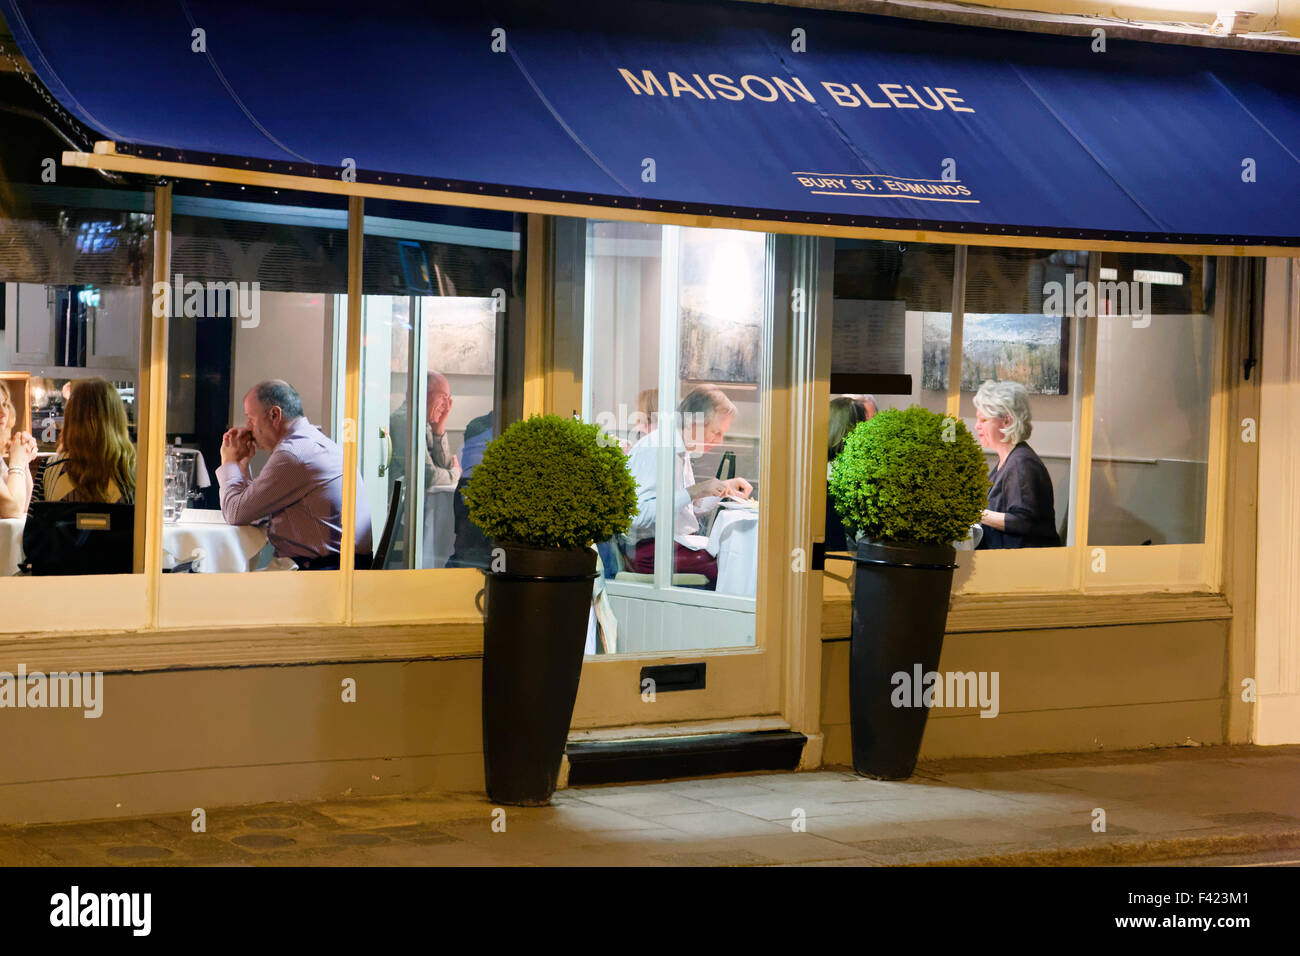 La Maison Bleue ristorante francese in Bury St Edmunds, Regno Unito Foto Stock